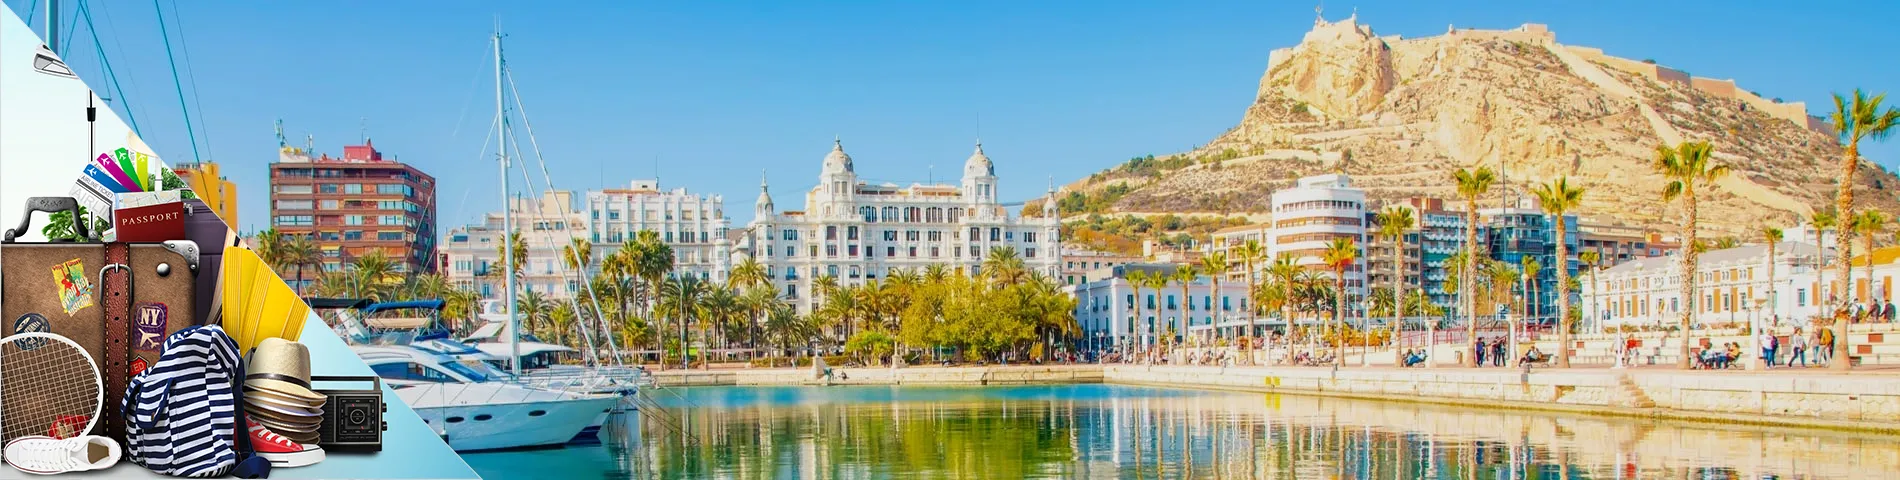 Alicante - Spanska för turism